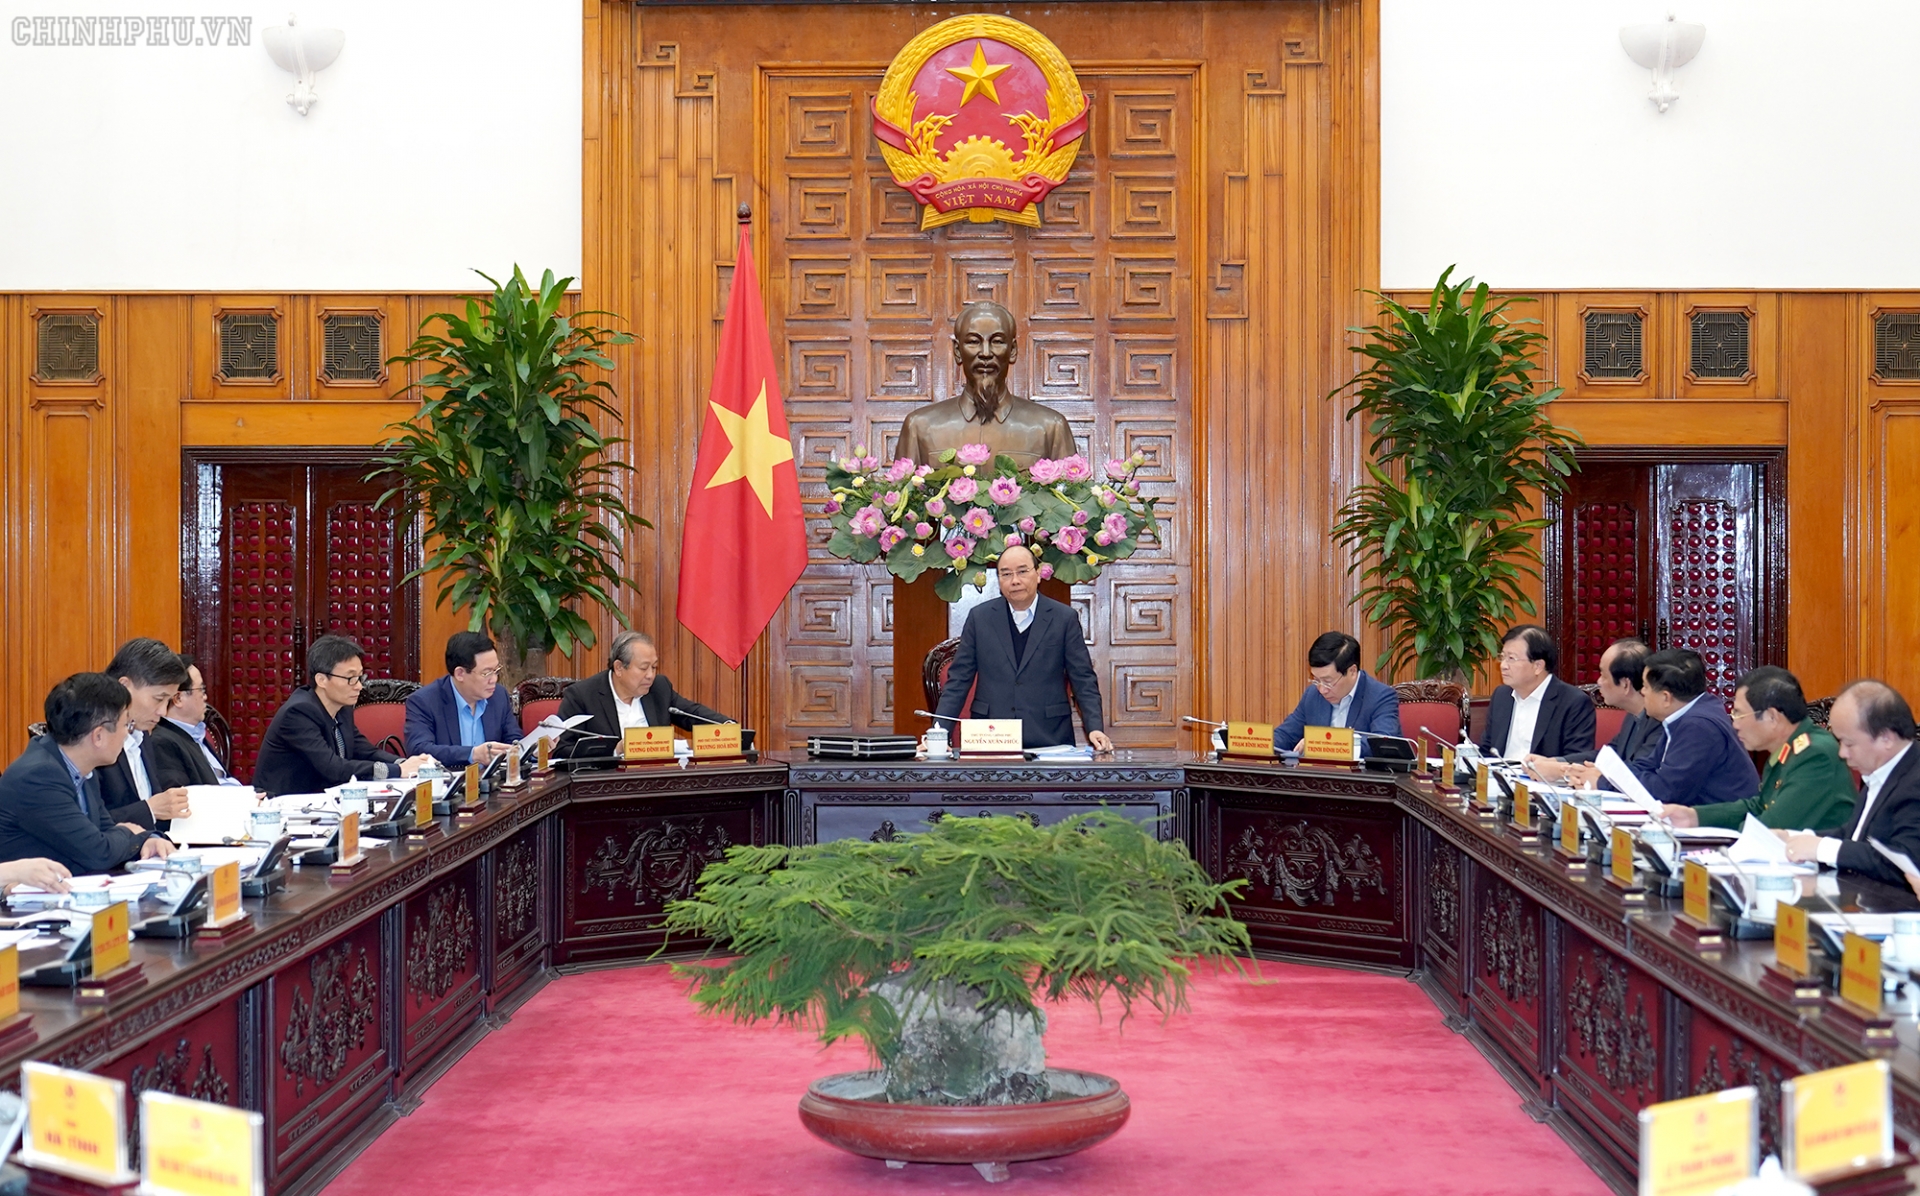 Hợp tác thương mại là một điểm sáng trong quan hệ Việt Nam - Lào